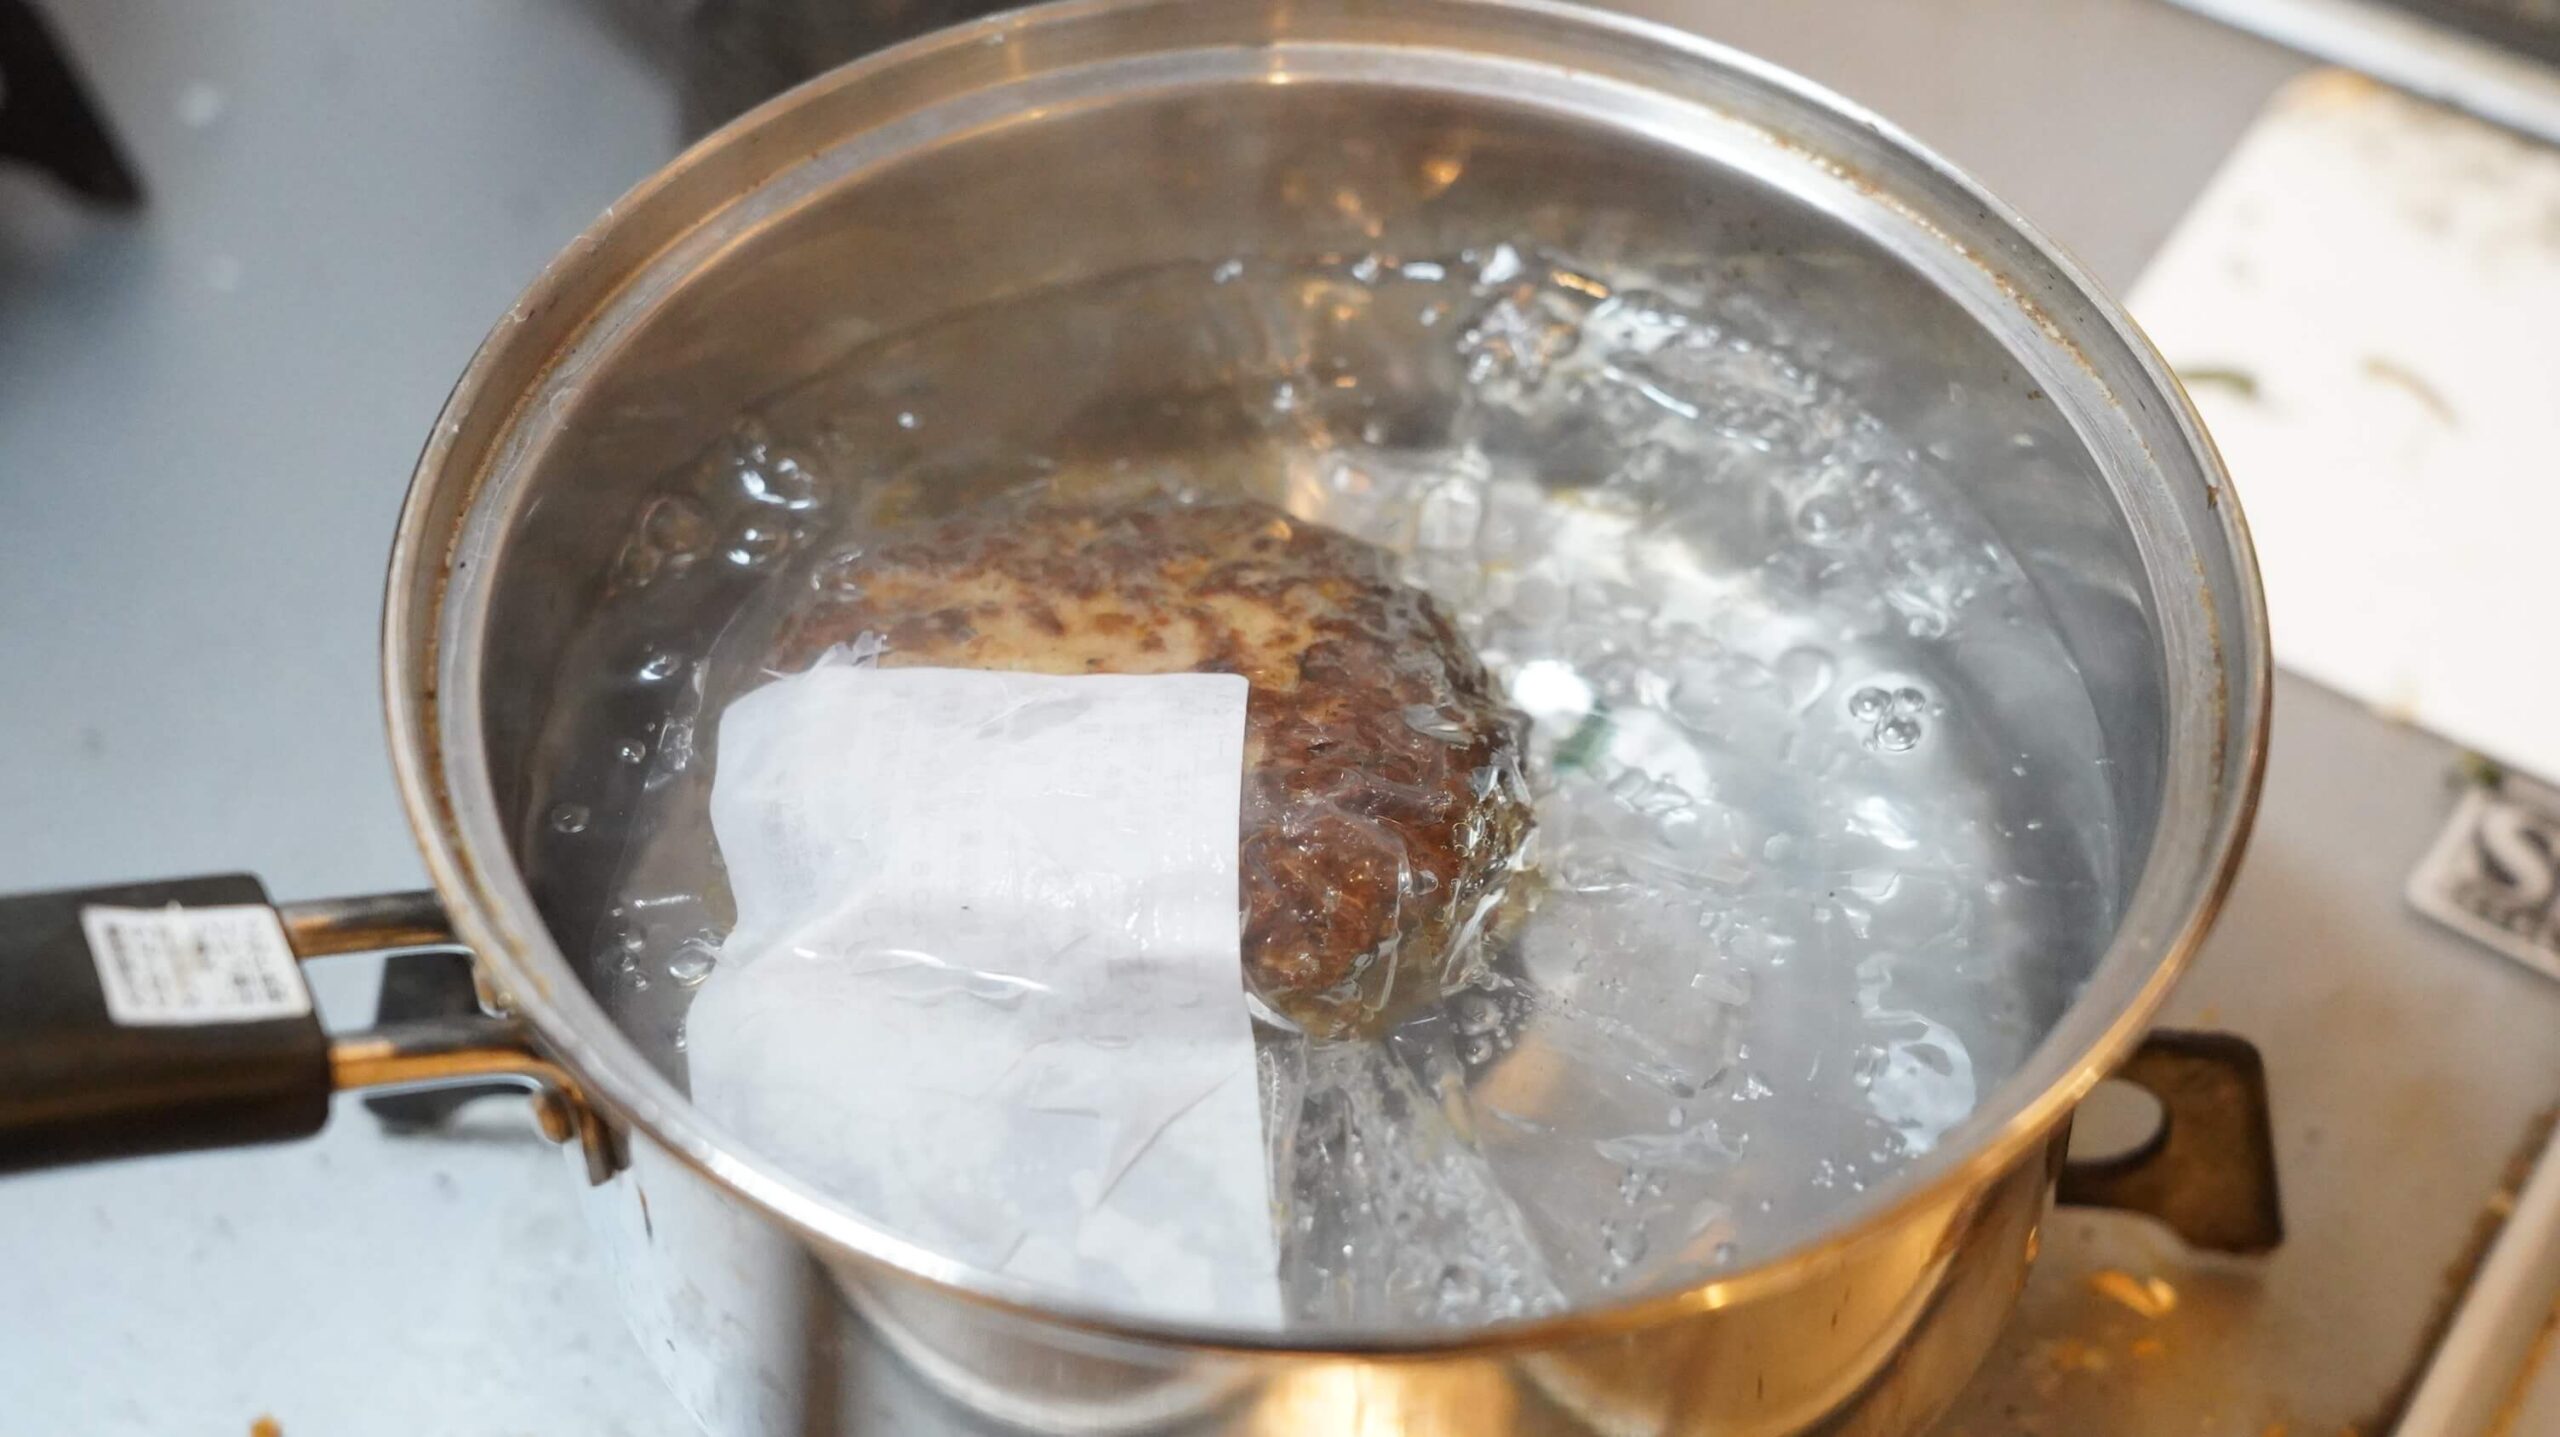 大阪ABCテレビ「CAST（キャスト）」に冷凍食品ドットコム「ノビ」が出演して紹介した冷食、俺のフレンチの冷凍食品「ロッシーニ風ハンバーグ」のハンバーグとフォアグラを湯煎している写真